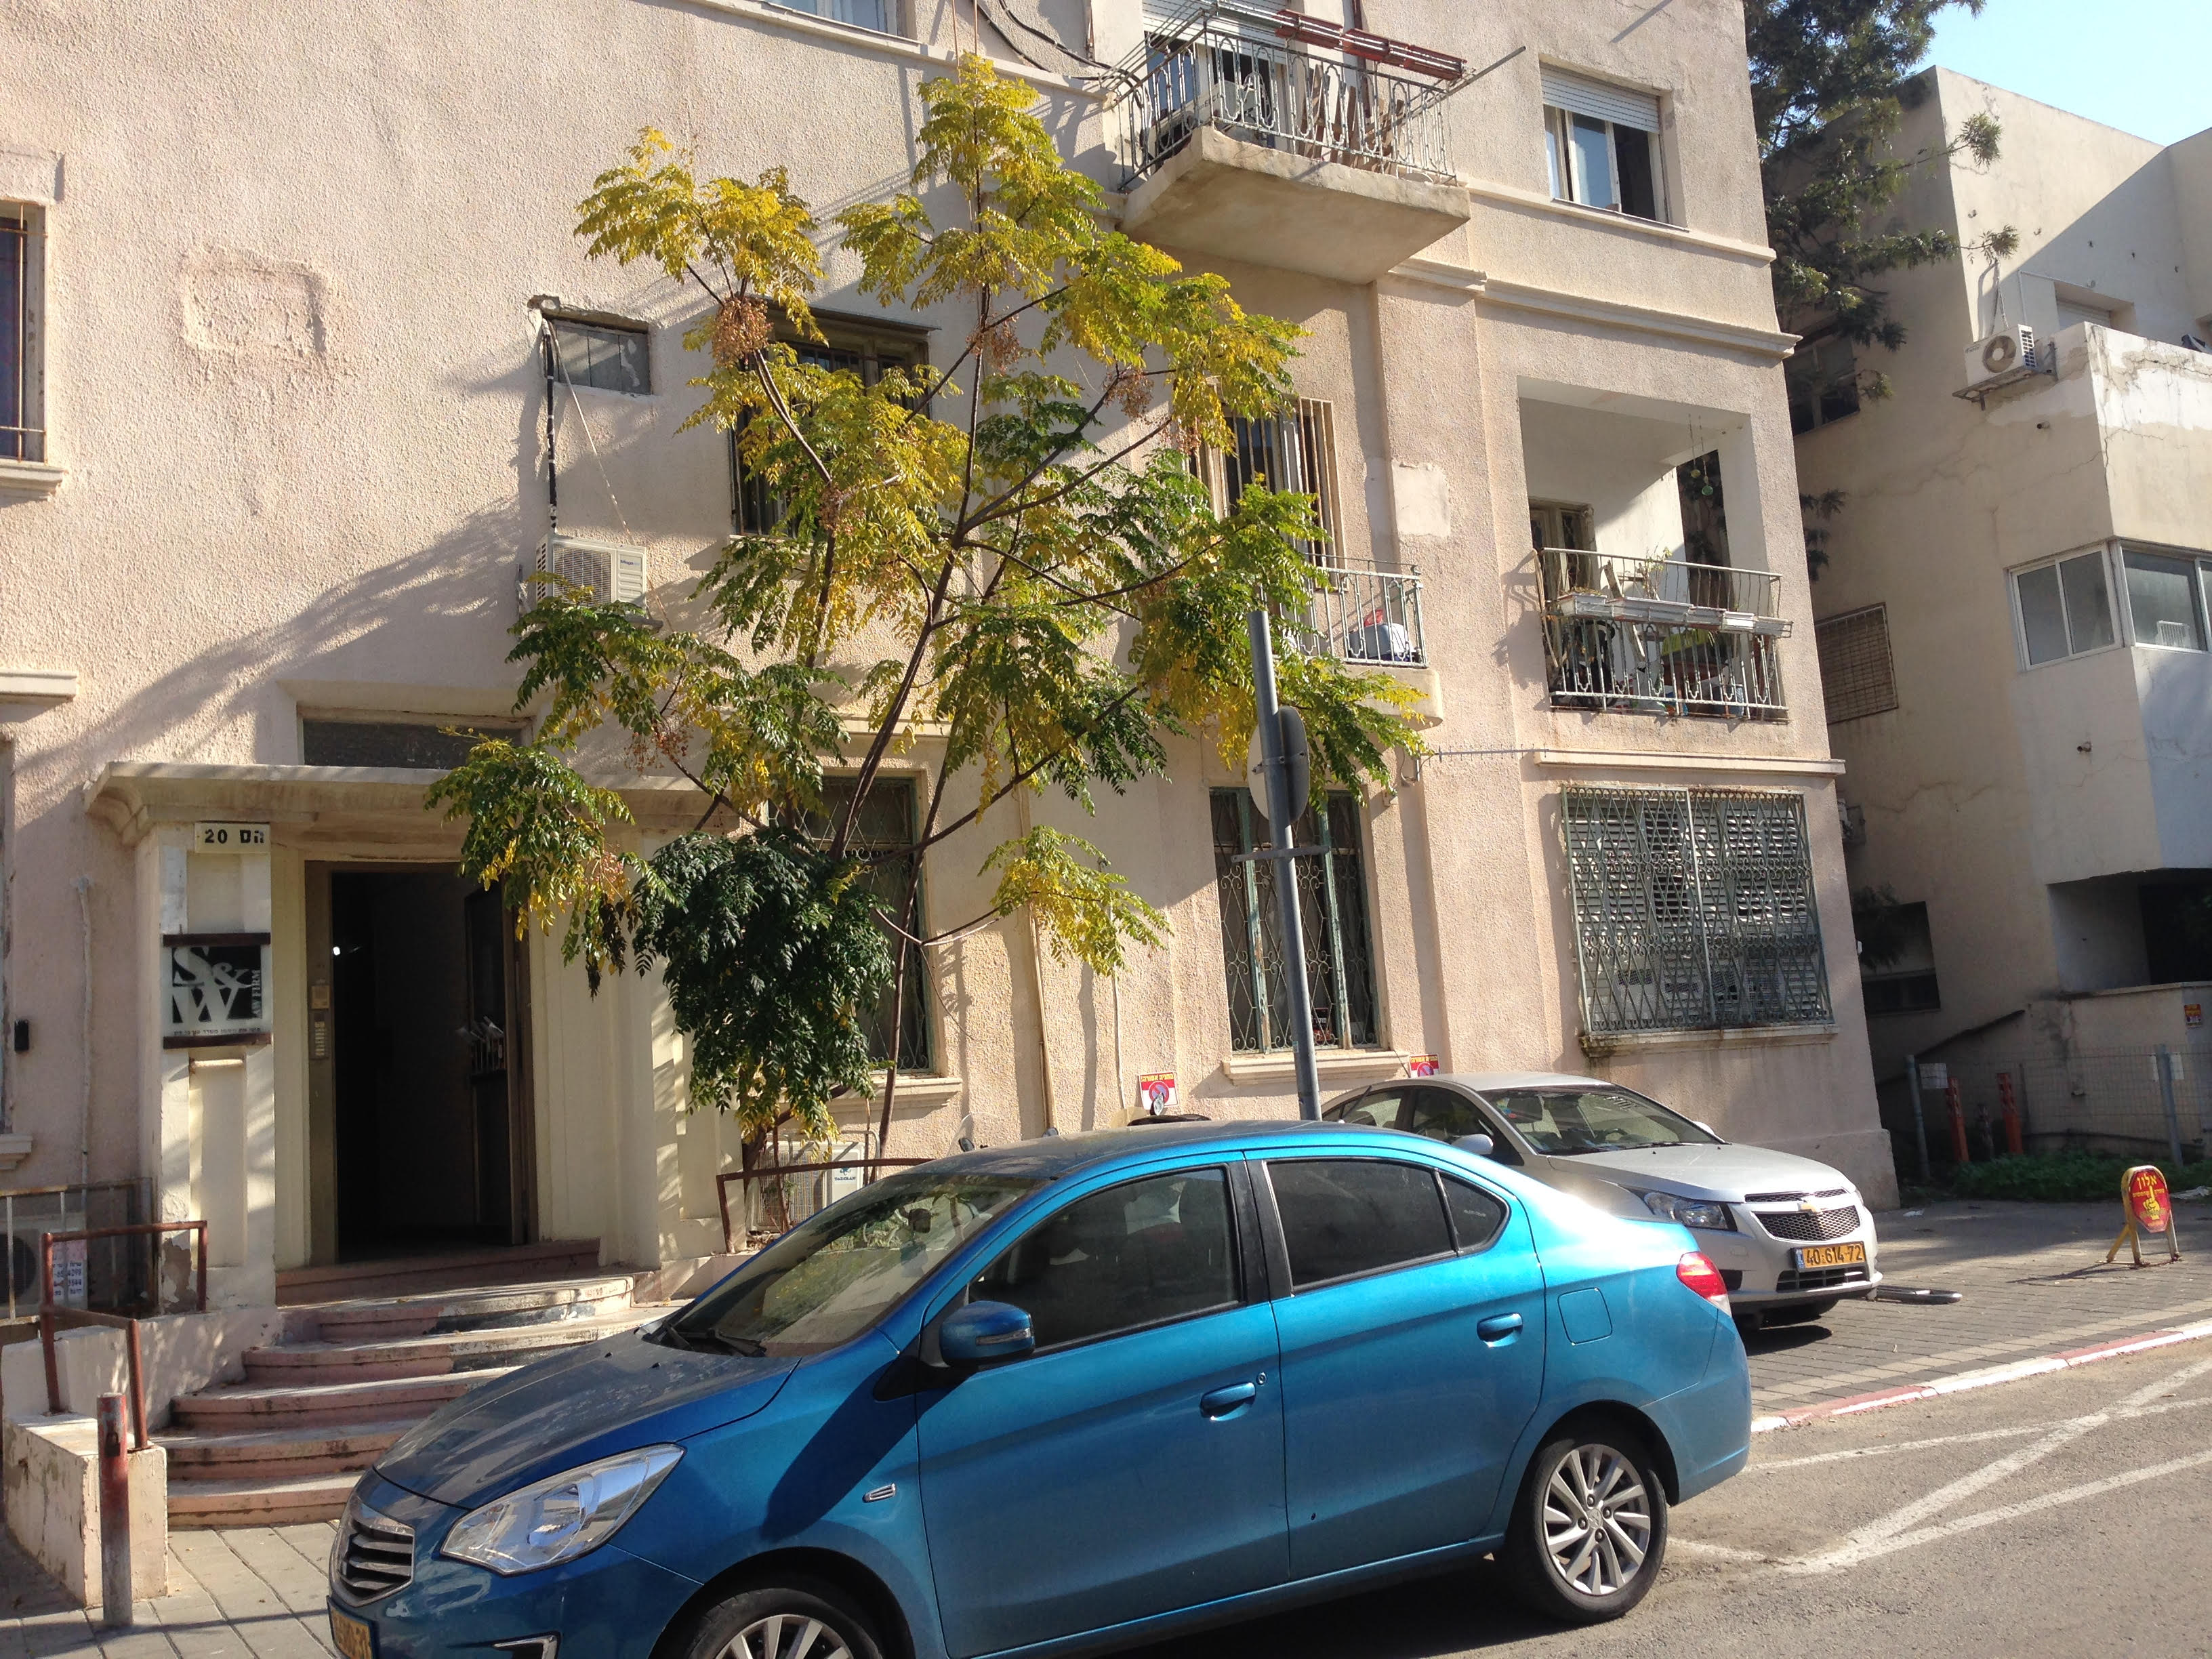 משרד עורכי דין בבניין מגורים, תל אביב. אילוסטרציה (צילום: המעבדה לעיצוב עירוני)